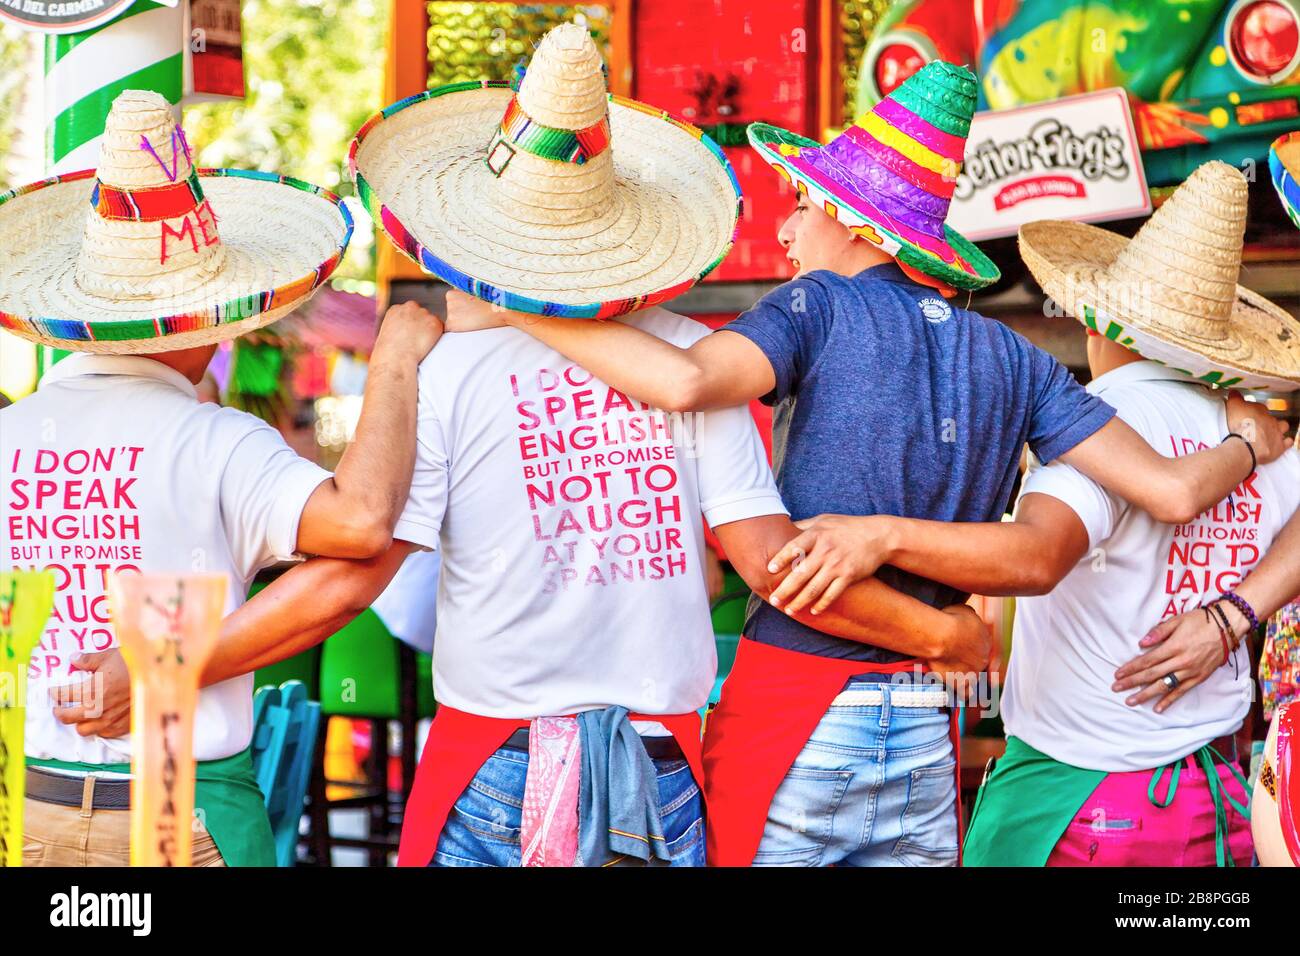 PLAYA DEL CARMEN, MEXIQUE - DEC. 26, 2019: Les touristes chantant avec des artistes de rue sur la célèbre 5ème Avenue dans le quartier des divertissements de Playa de Banque D'Images